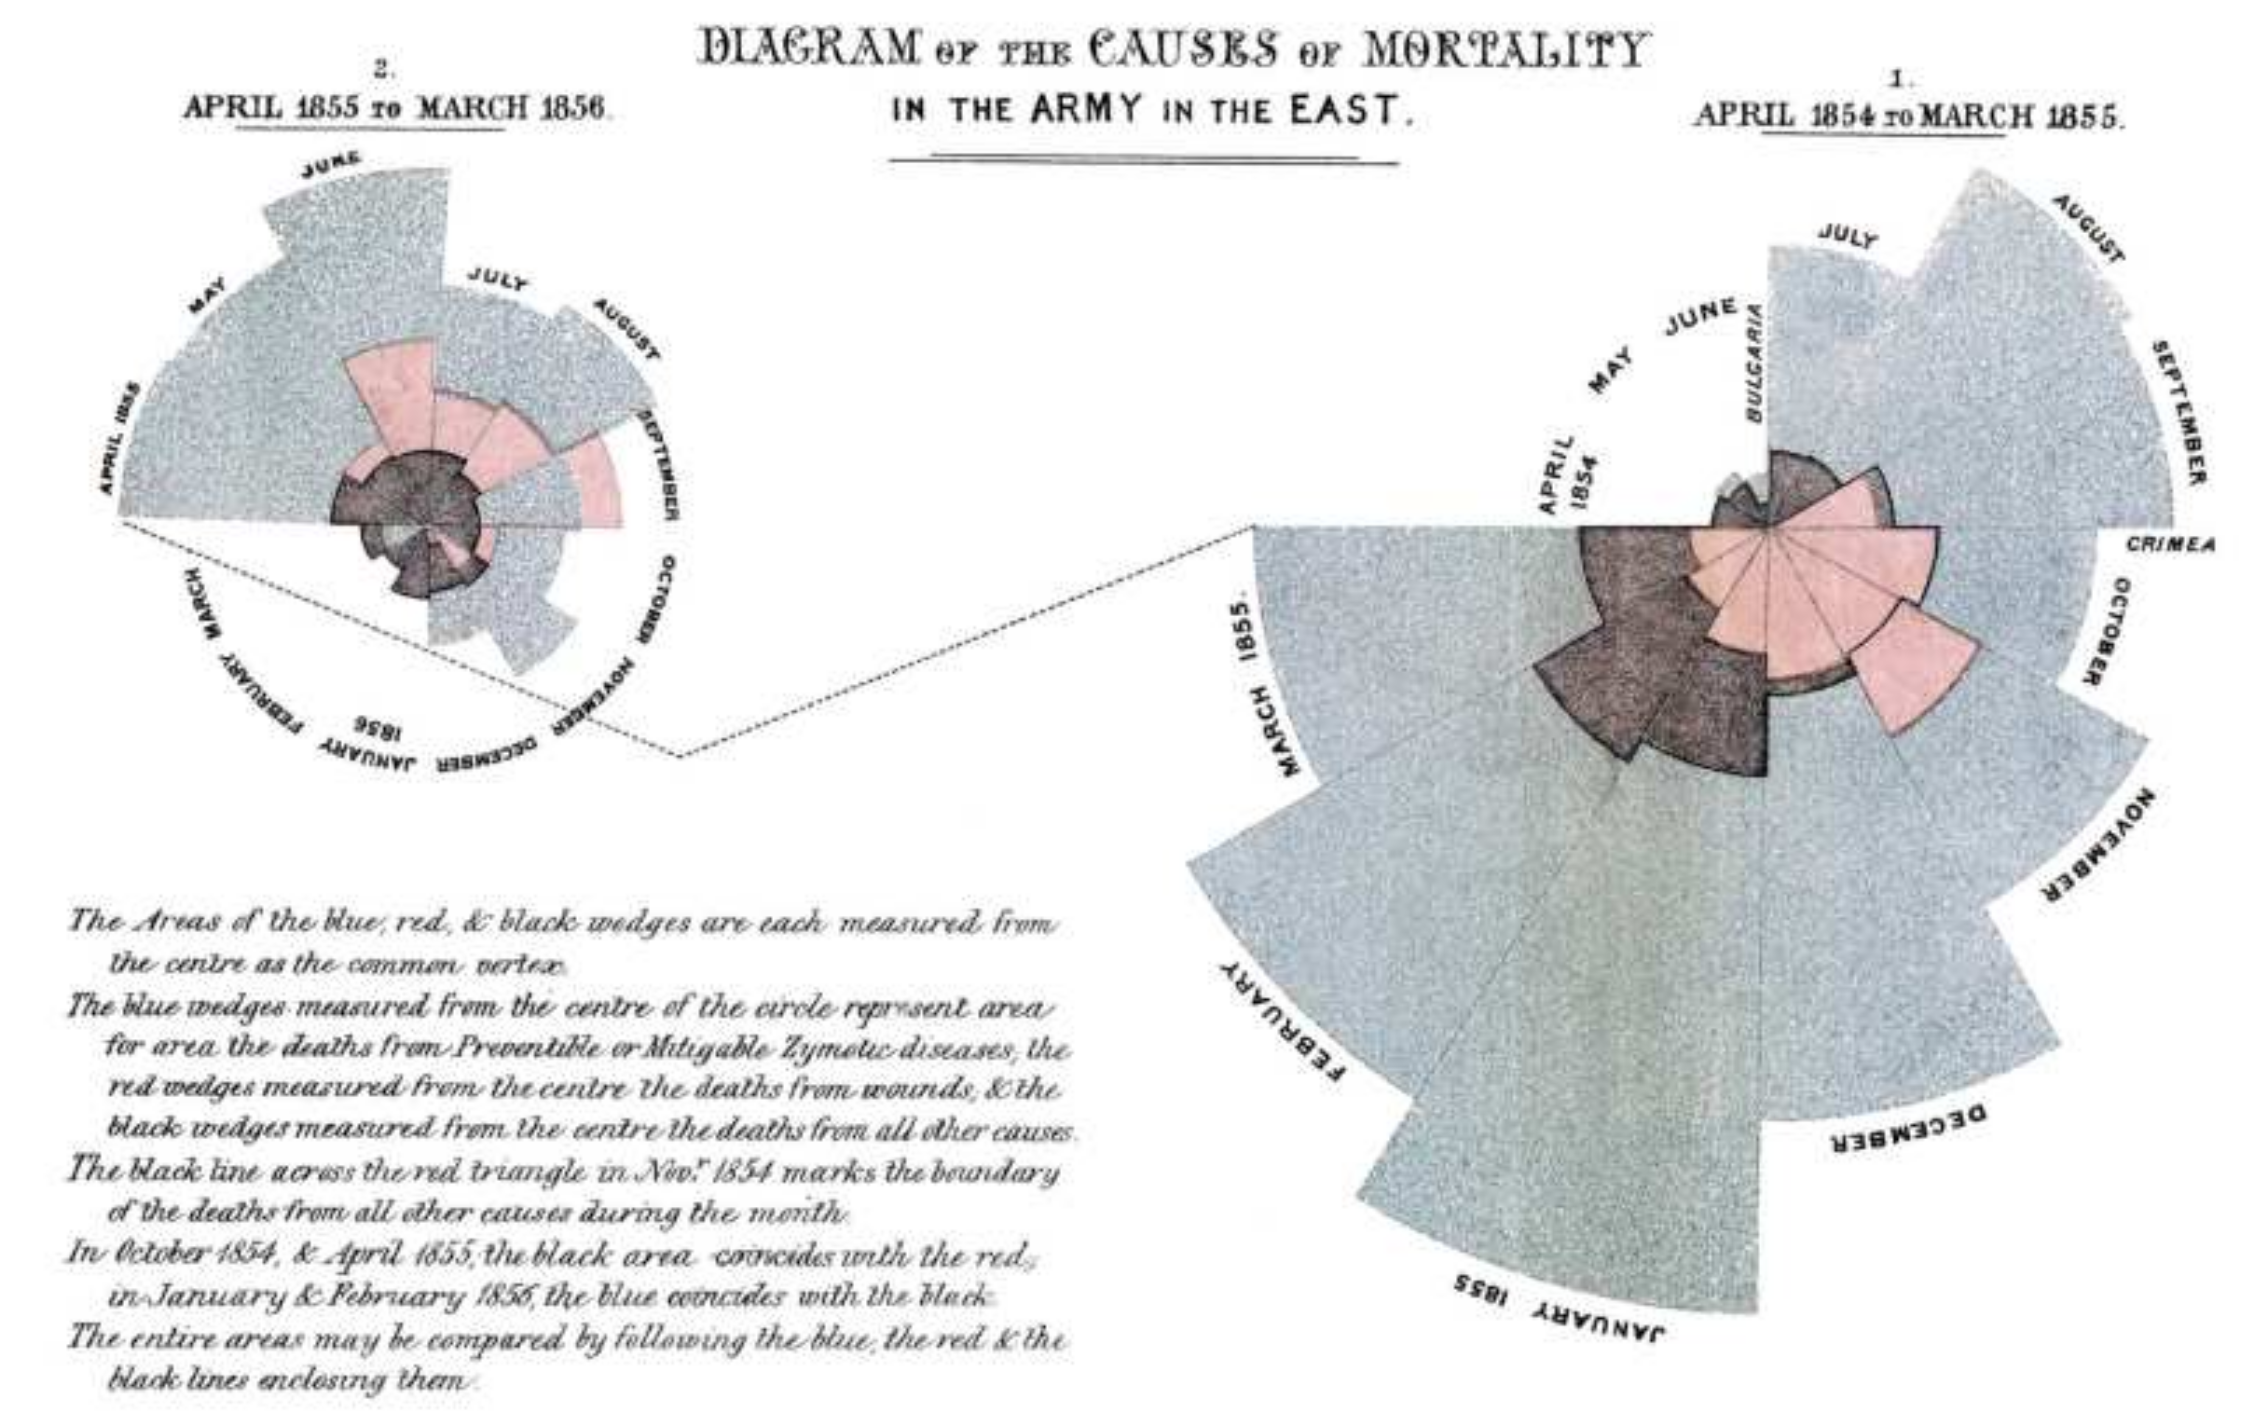 Diagrama das causas de mortalidade do exército leste (1854). Nele, Florence Nightingale (1854) buscou evidenciar, a partir das evidências, as principais causas da alta mortalidade entre os combatentes.